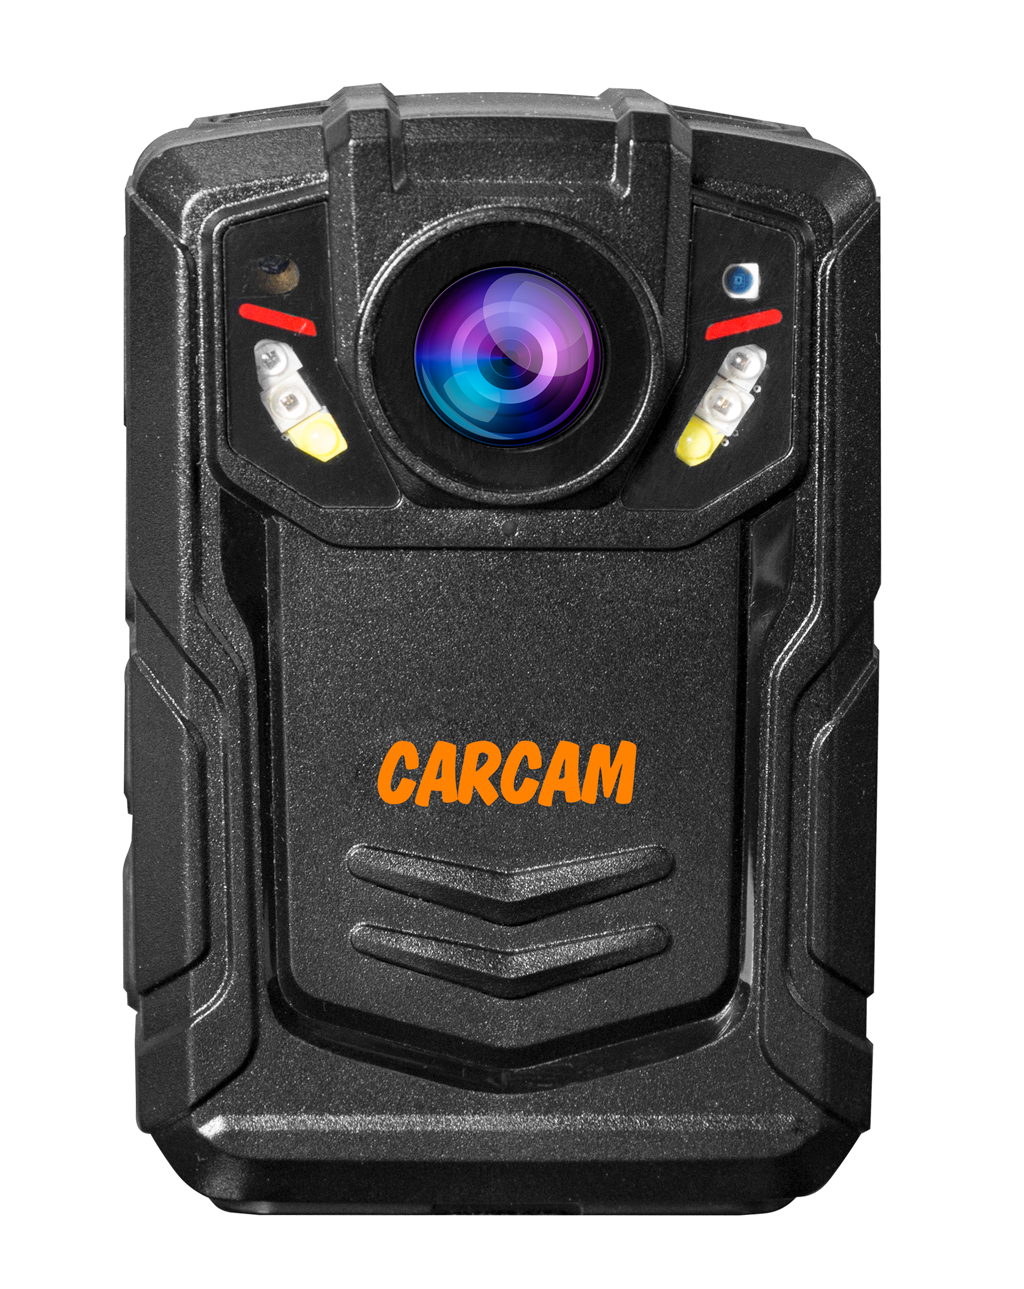 Персональный видеорегистратор CARCAM COMBAT 2S PRO 64GB персональный quad hd видеорегистратор для работников технических объектов carcam combat 2s prof 64gb